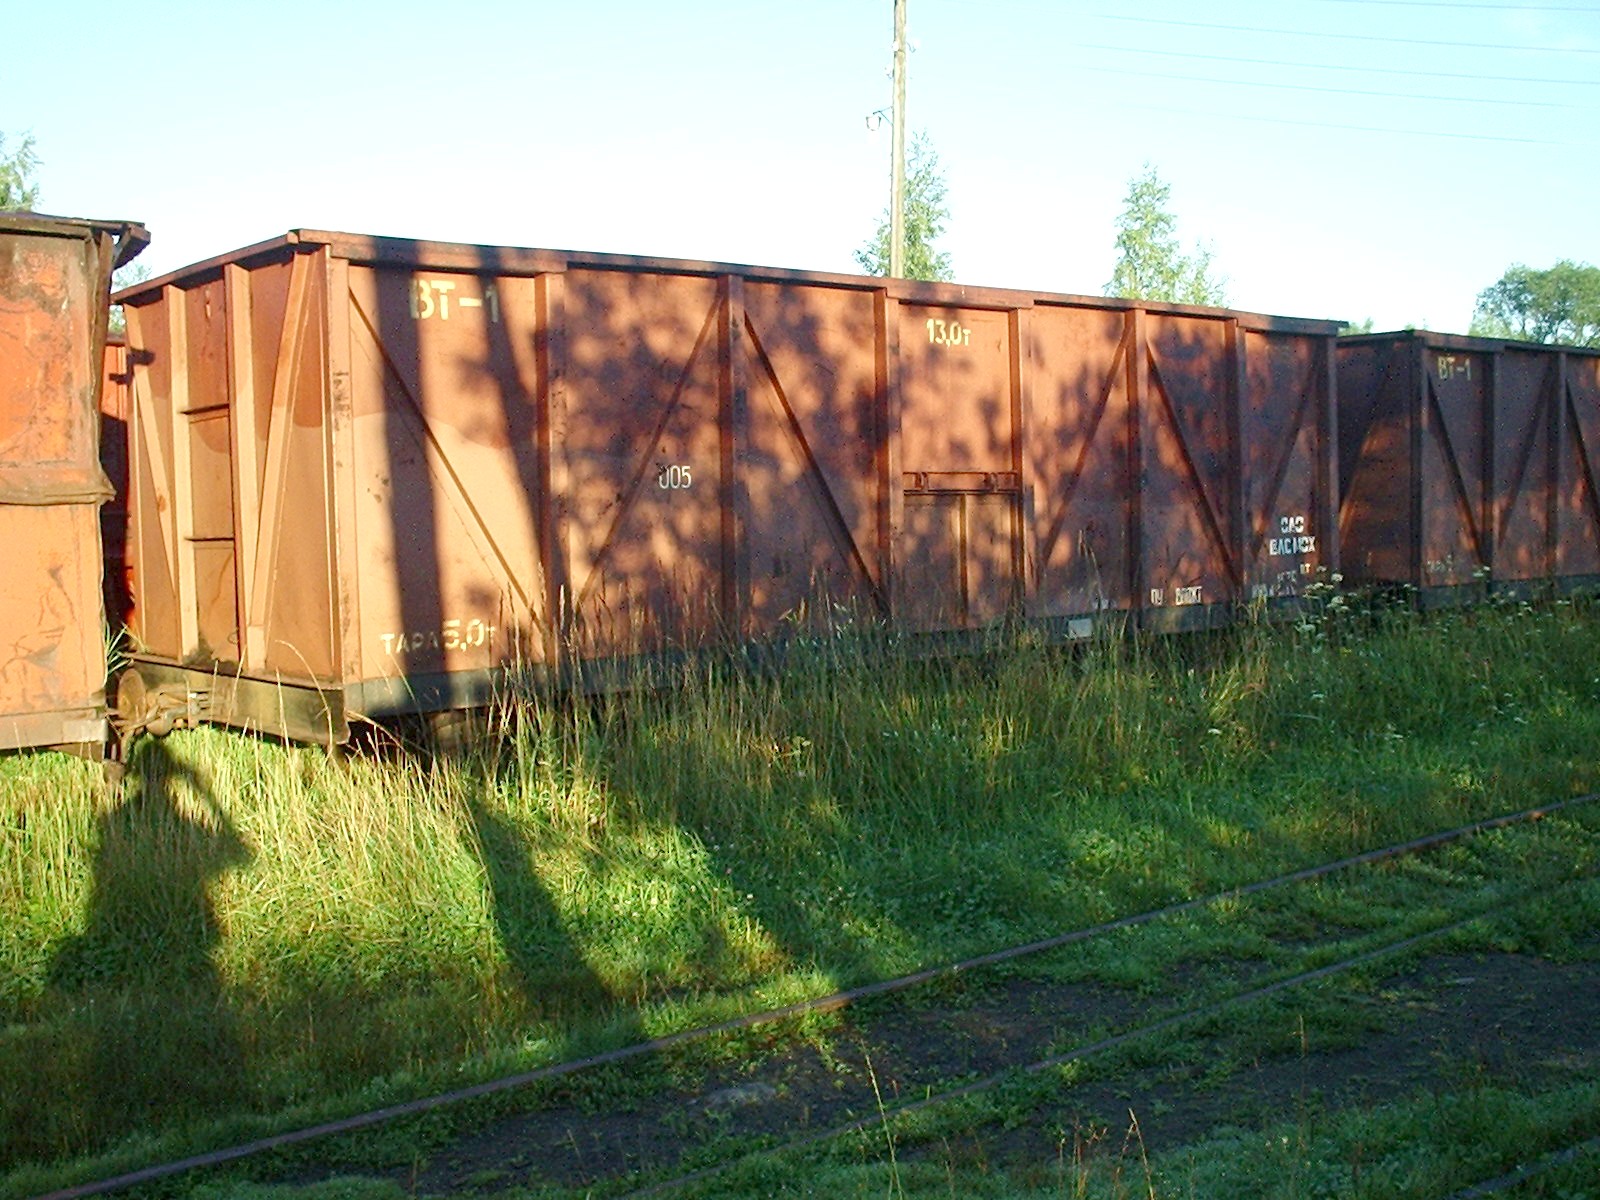 Узкоколейная железная дорога Васильевского предприятия промышленного железнодорожного транспорта  — фотографии, сделанные в 2005 году (часть 3)